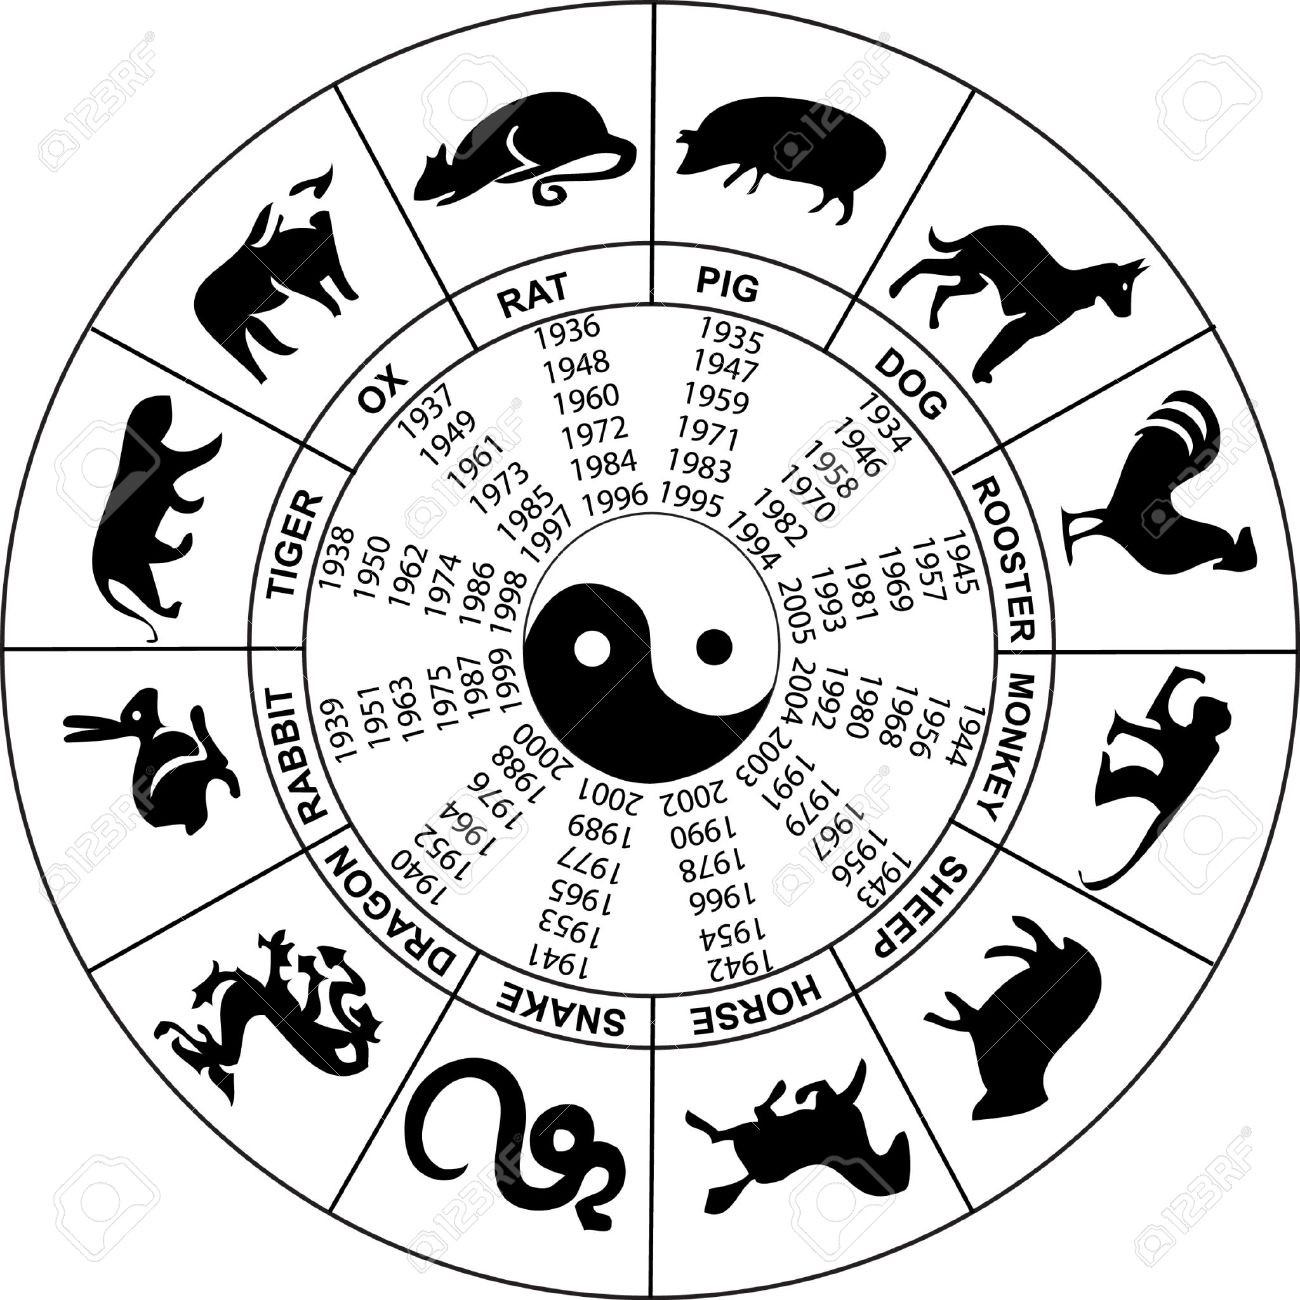  Chińska astrologia i chińskie znaki zodiaku